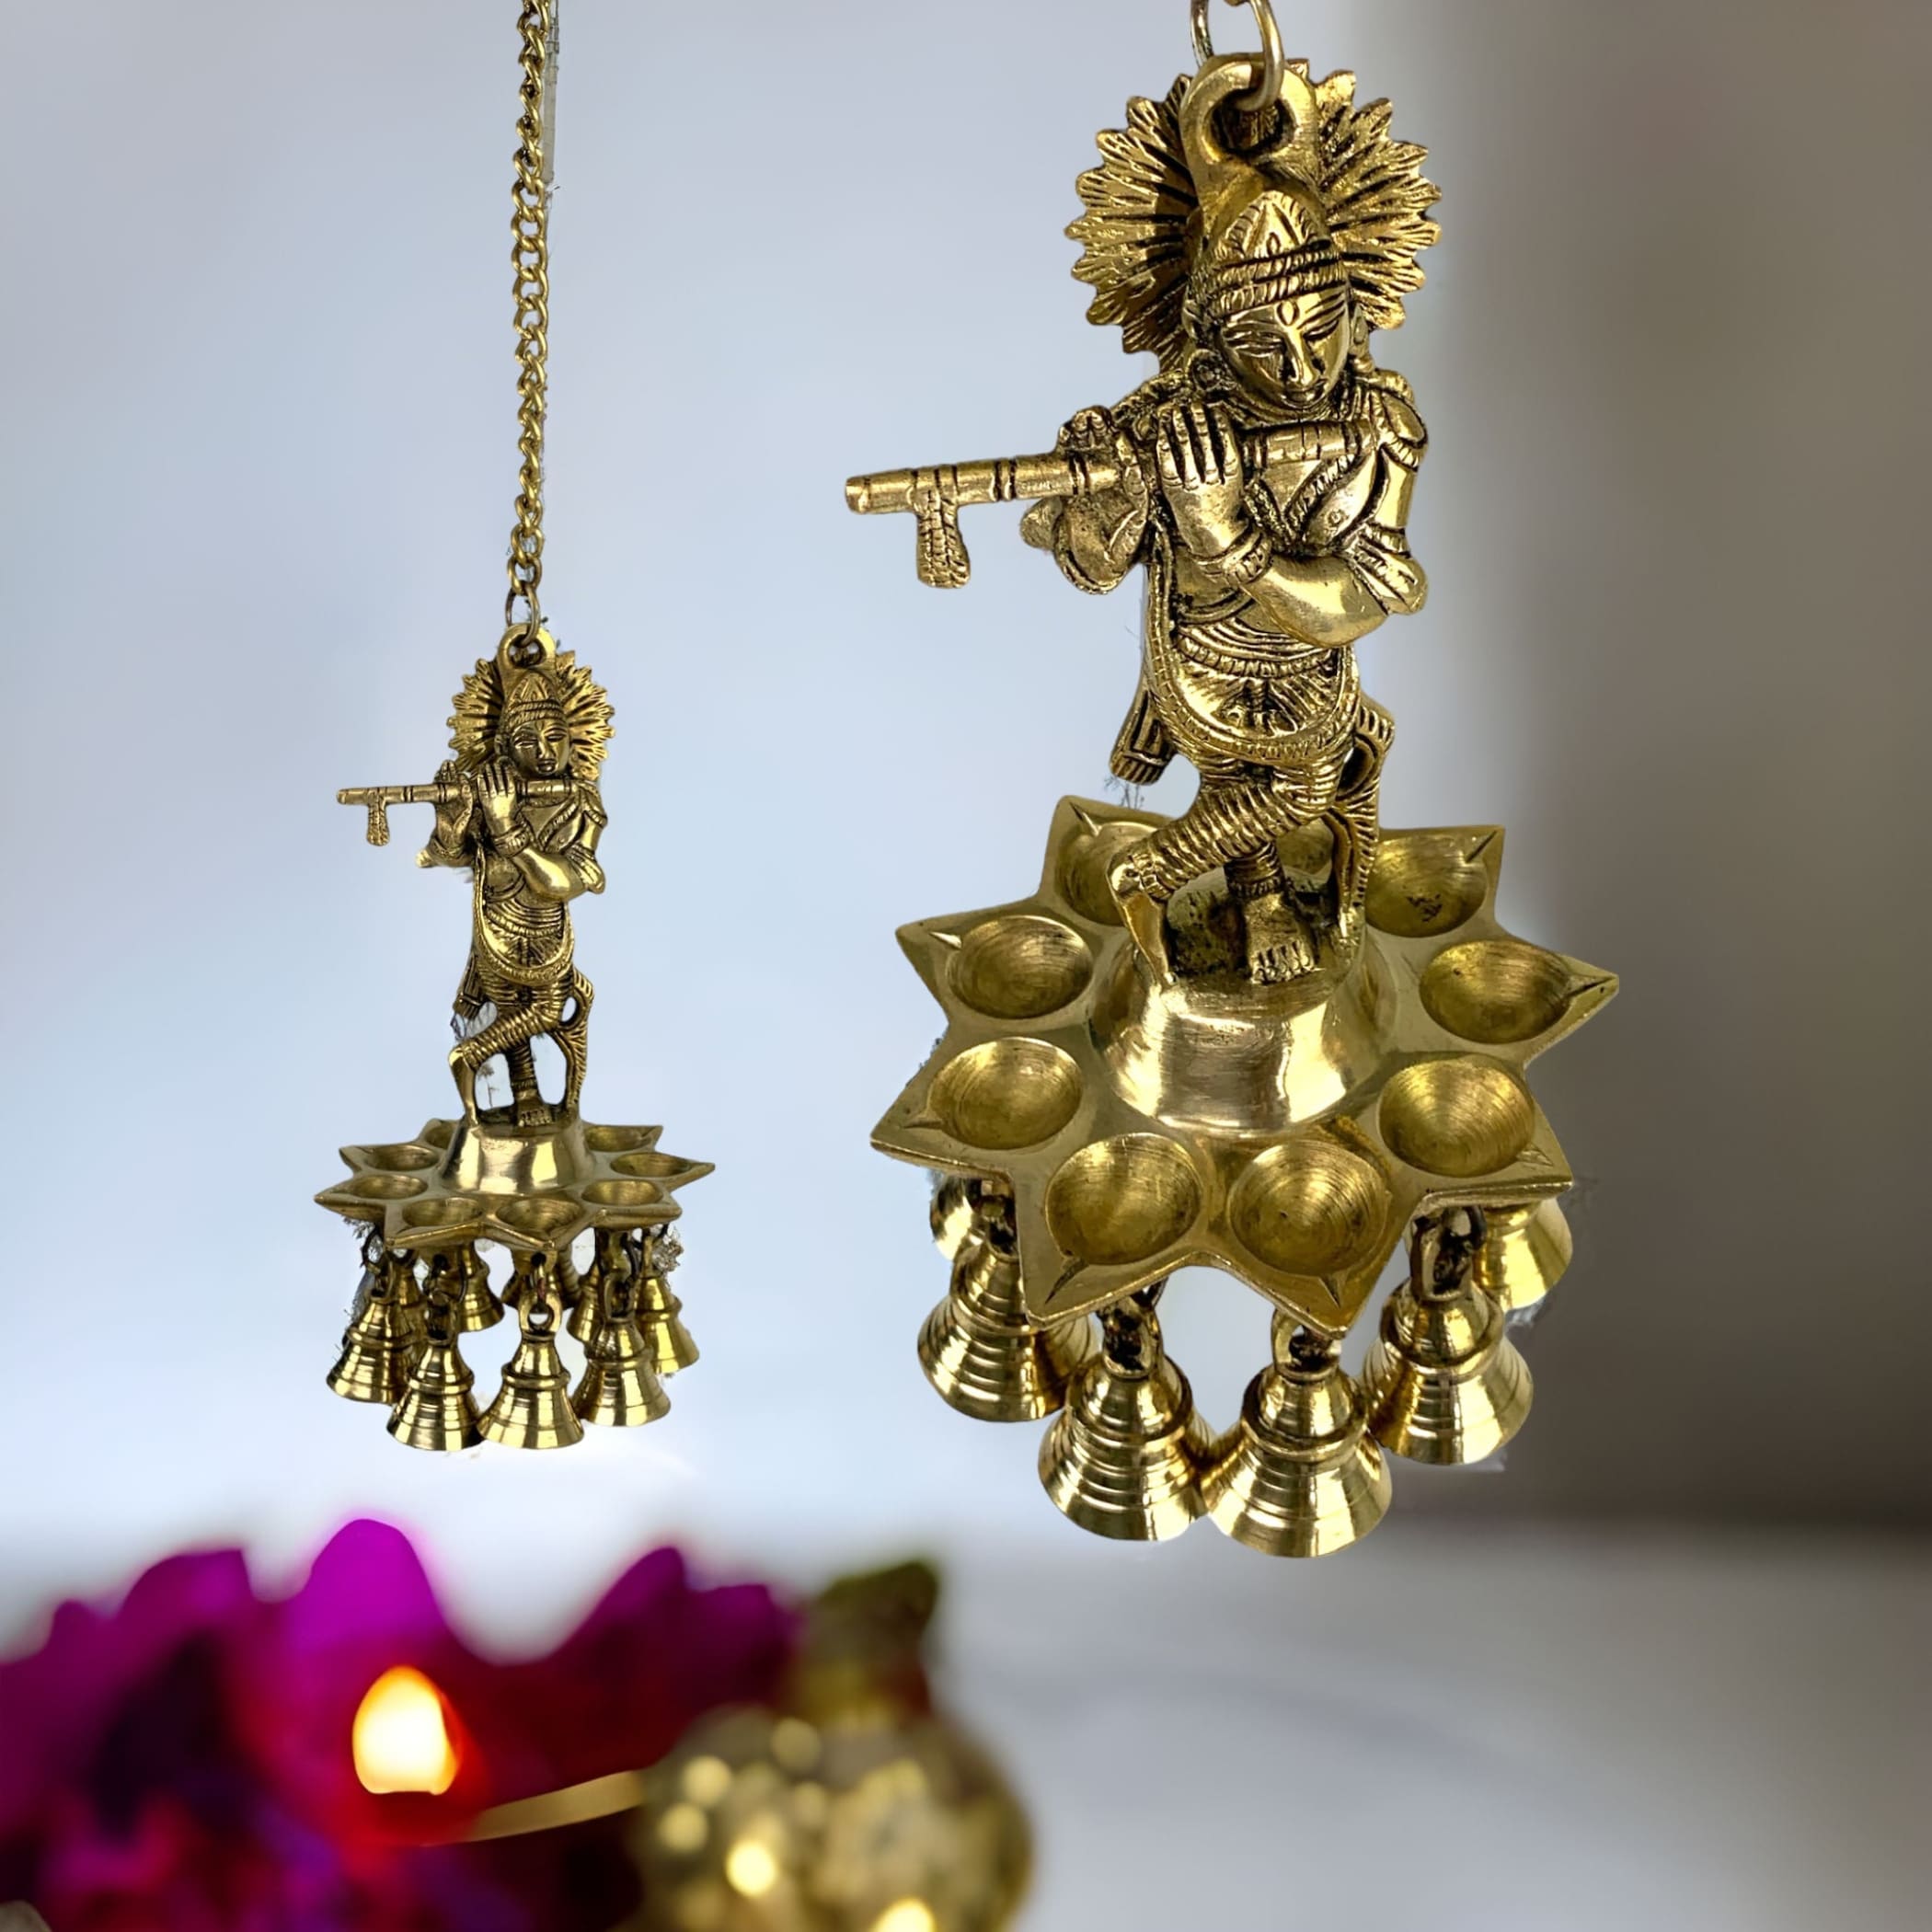 Krishna brass oil samai hanging diya diwali decor altar